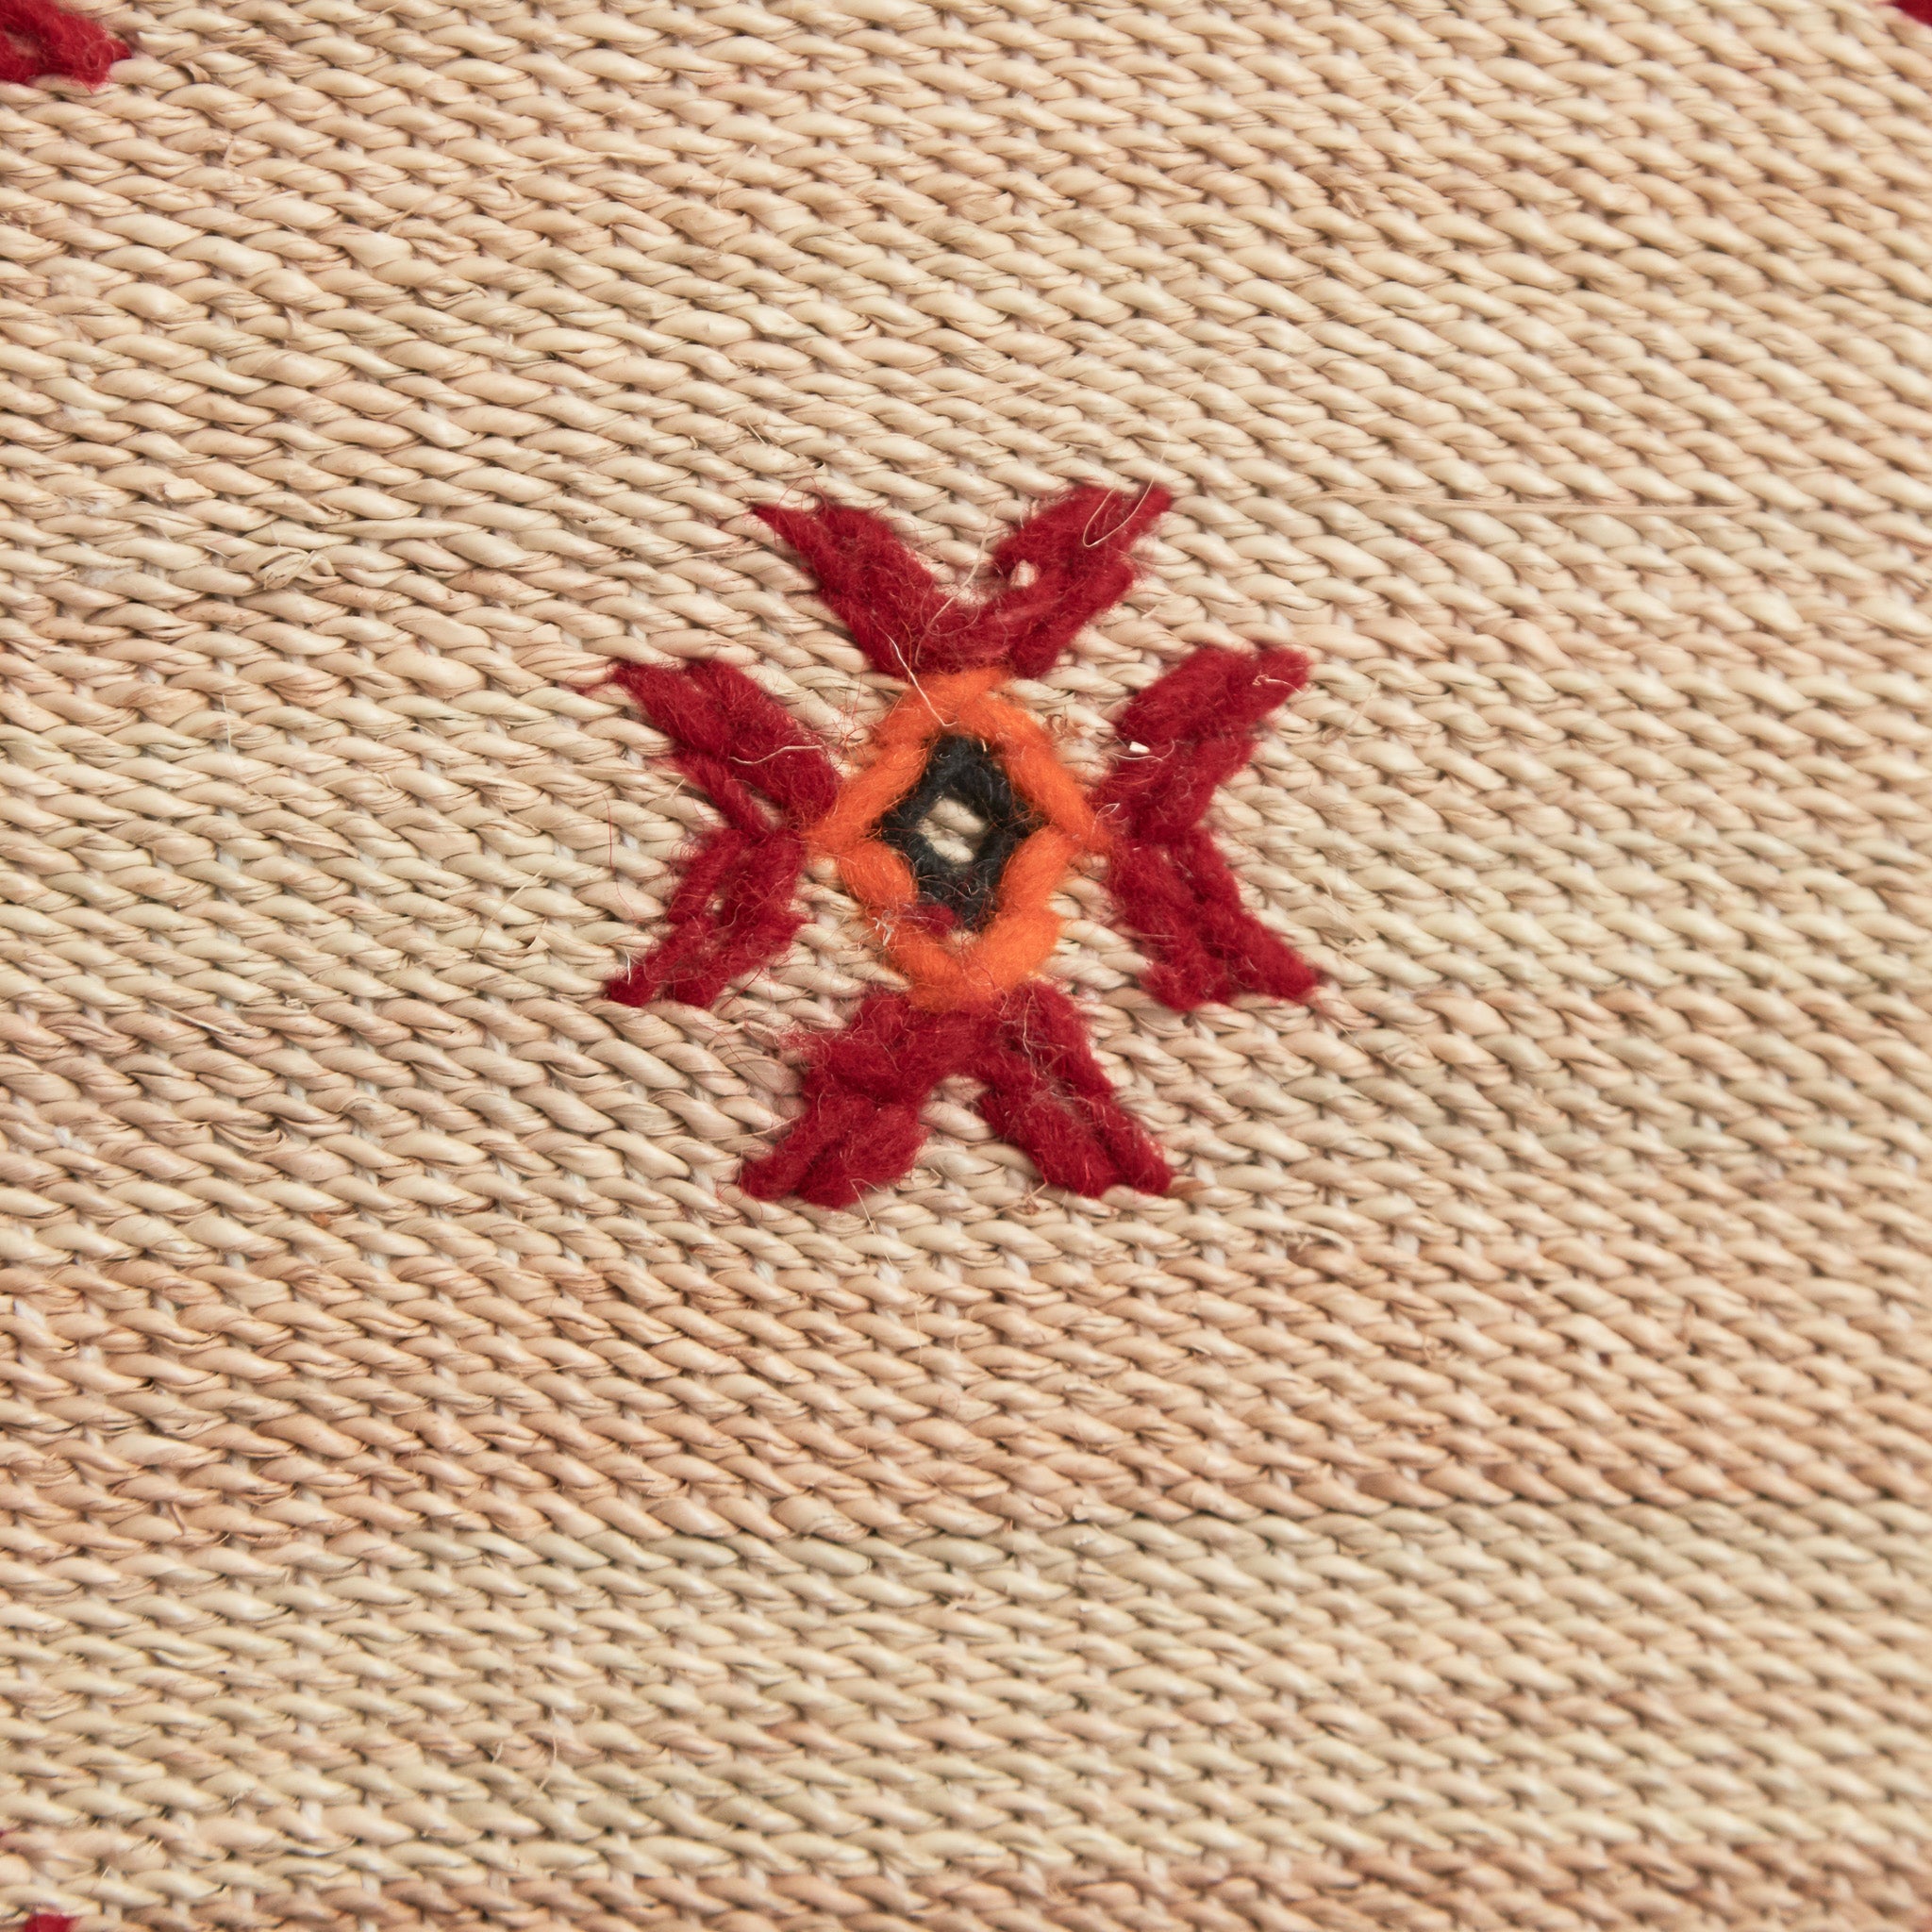 dettaglio del ricamo in lana rossa arancione e nera di una stuoia tappeto in paglia hassira media in paglia di palma e ricami in lana